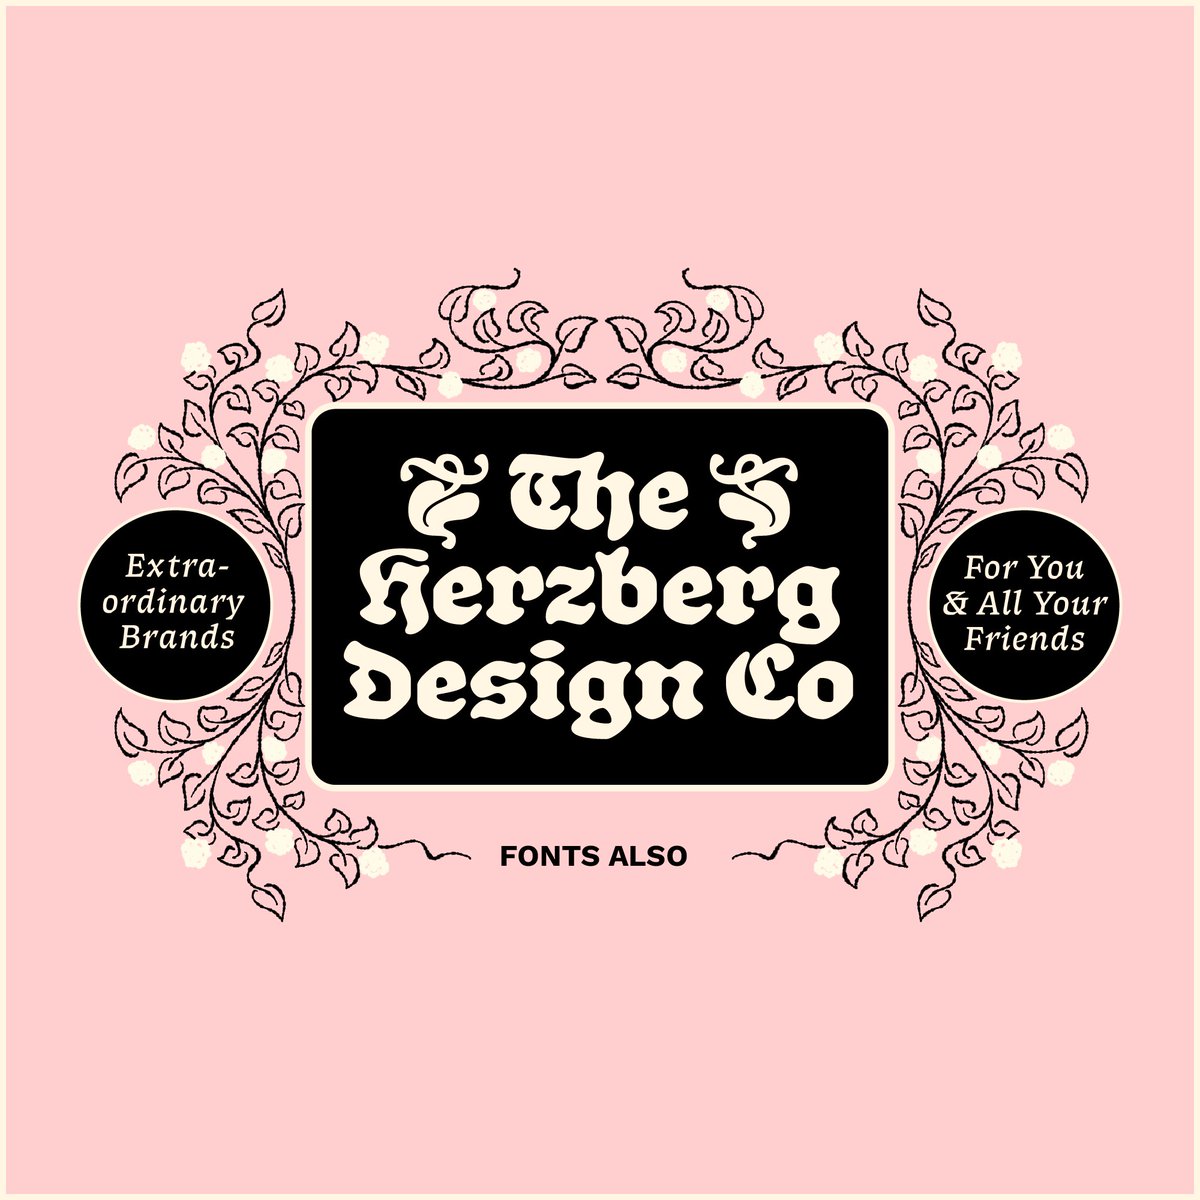 herzbergdesign tweet picture